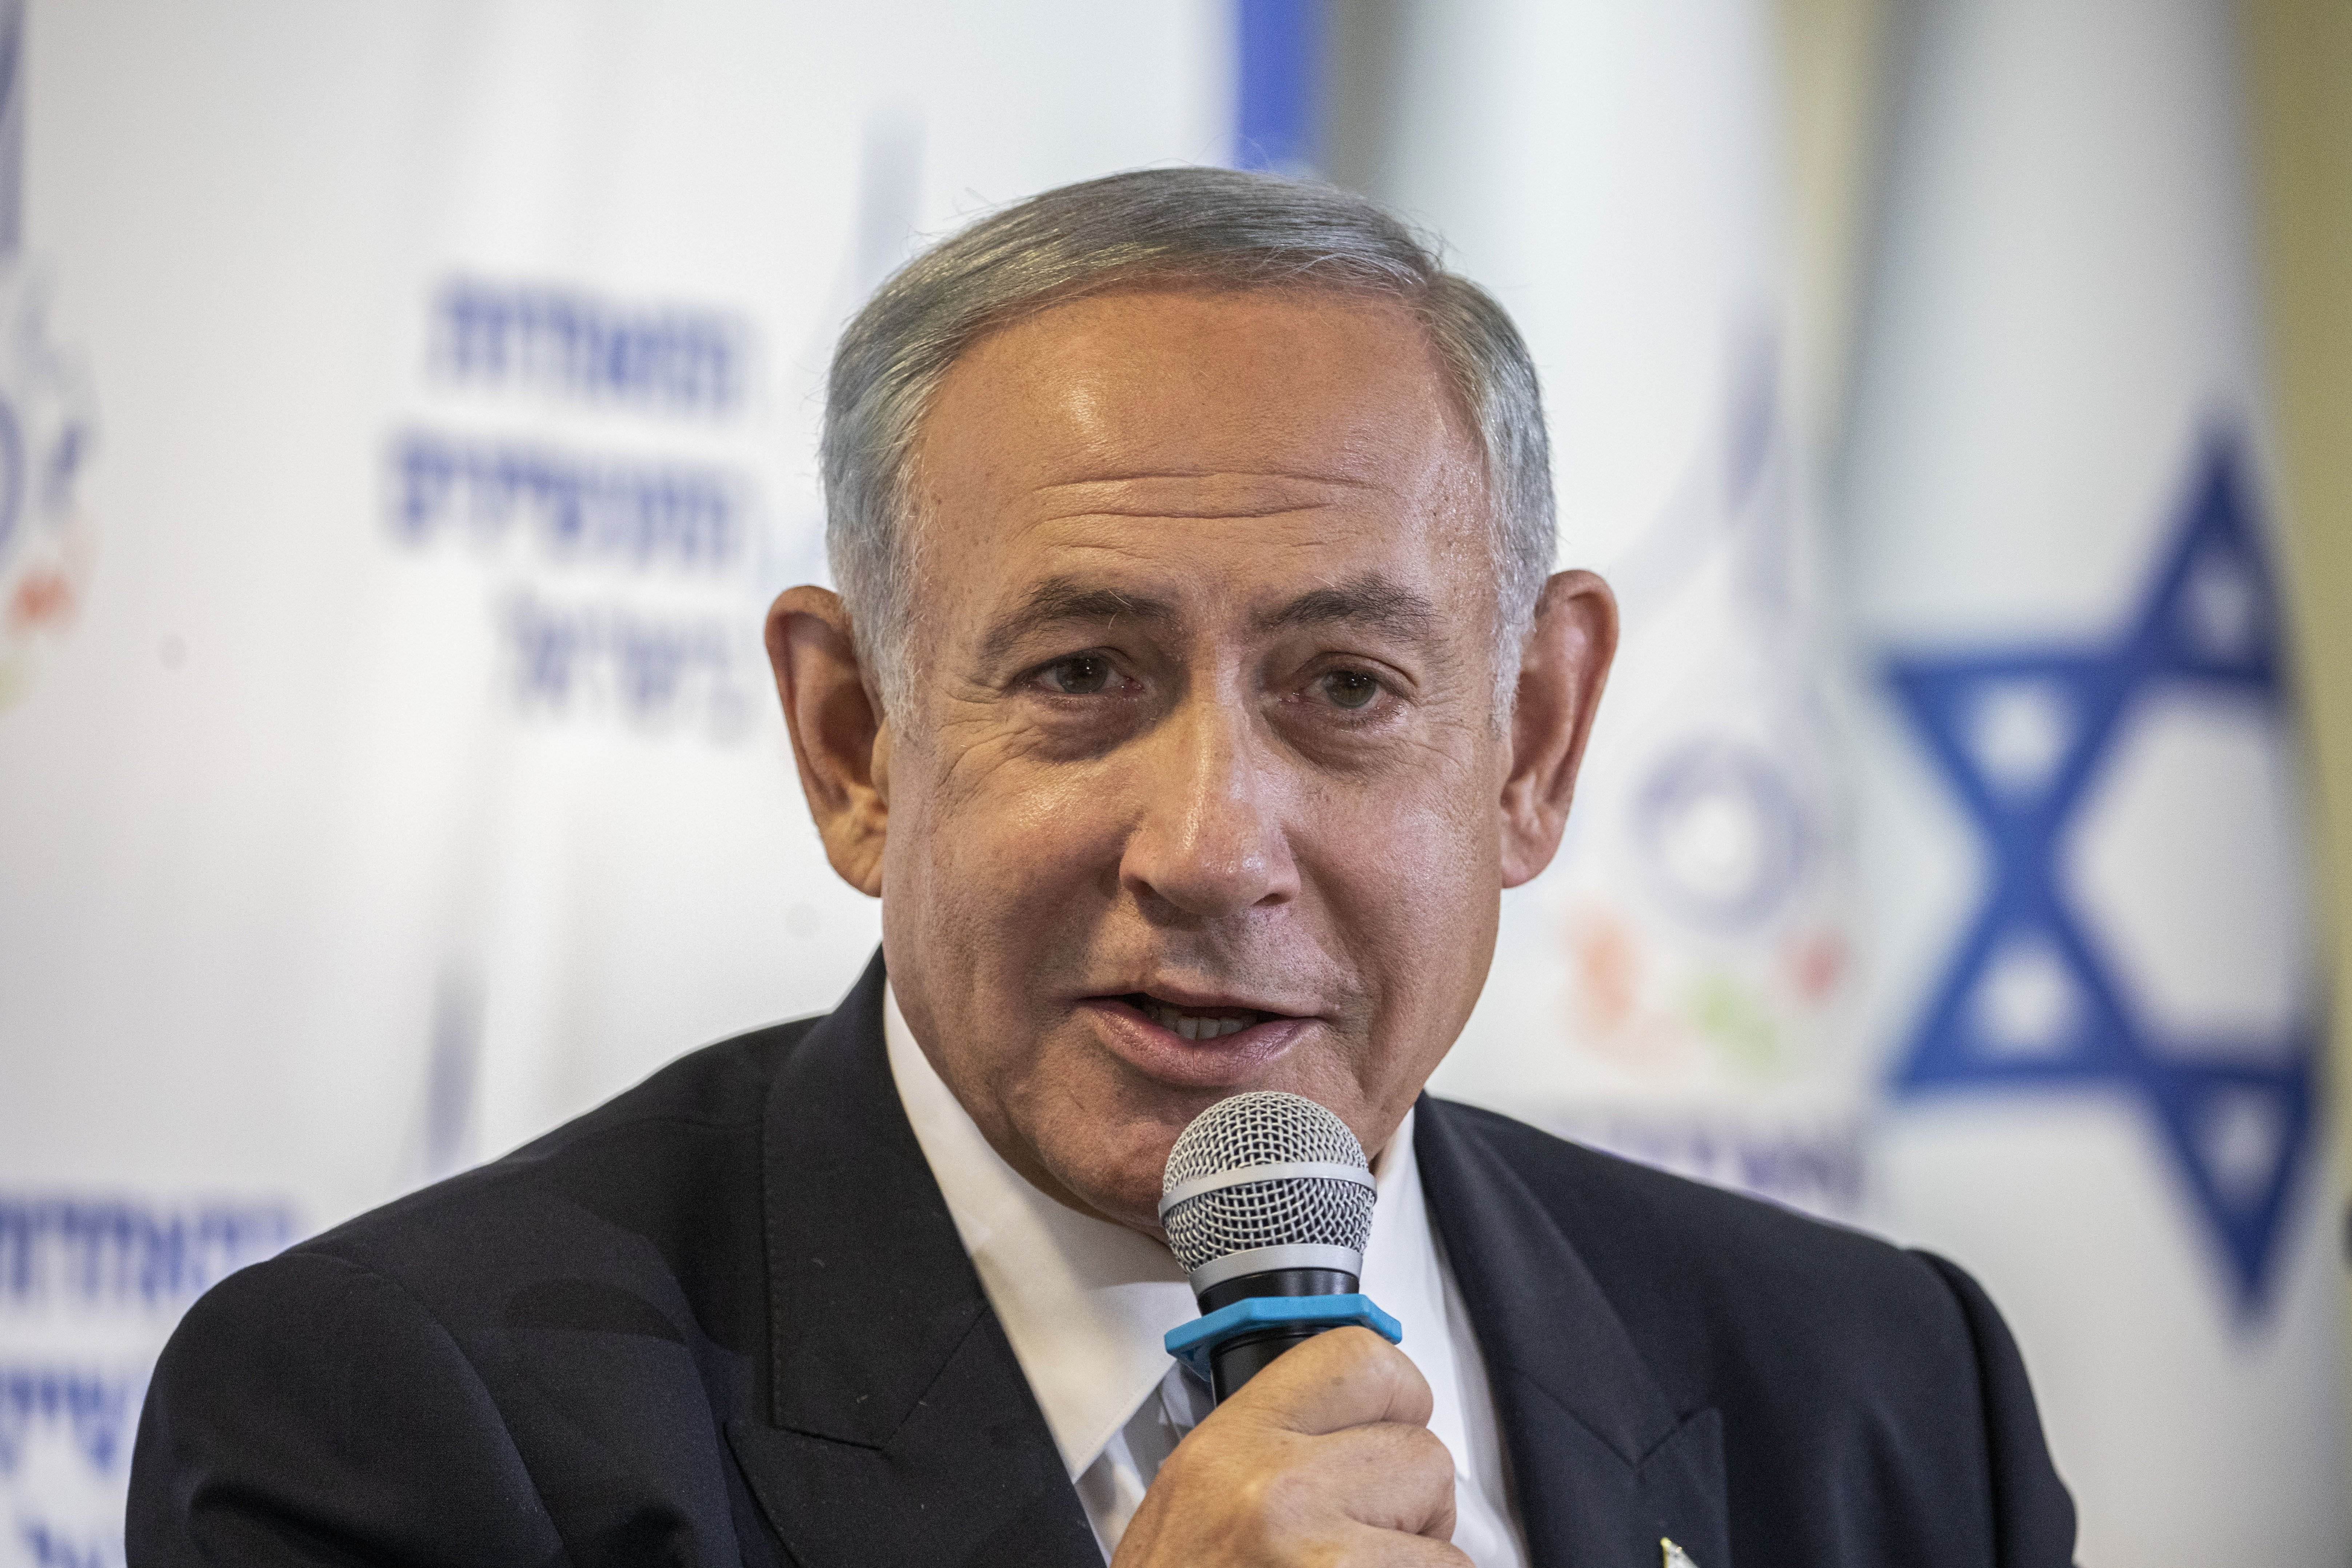 El 56% dels israelians considera que Netanyahu ha de dimitir tan bon punt acabi el conflicte